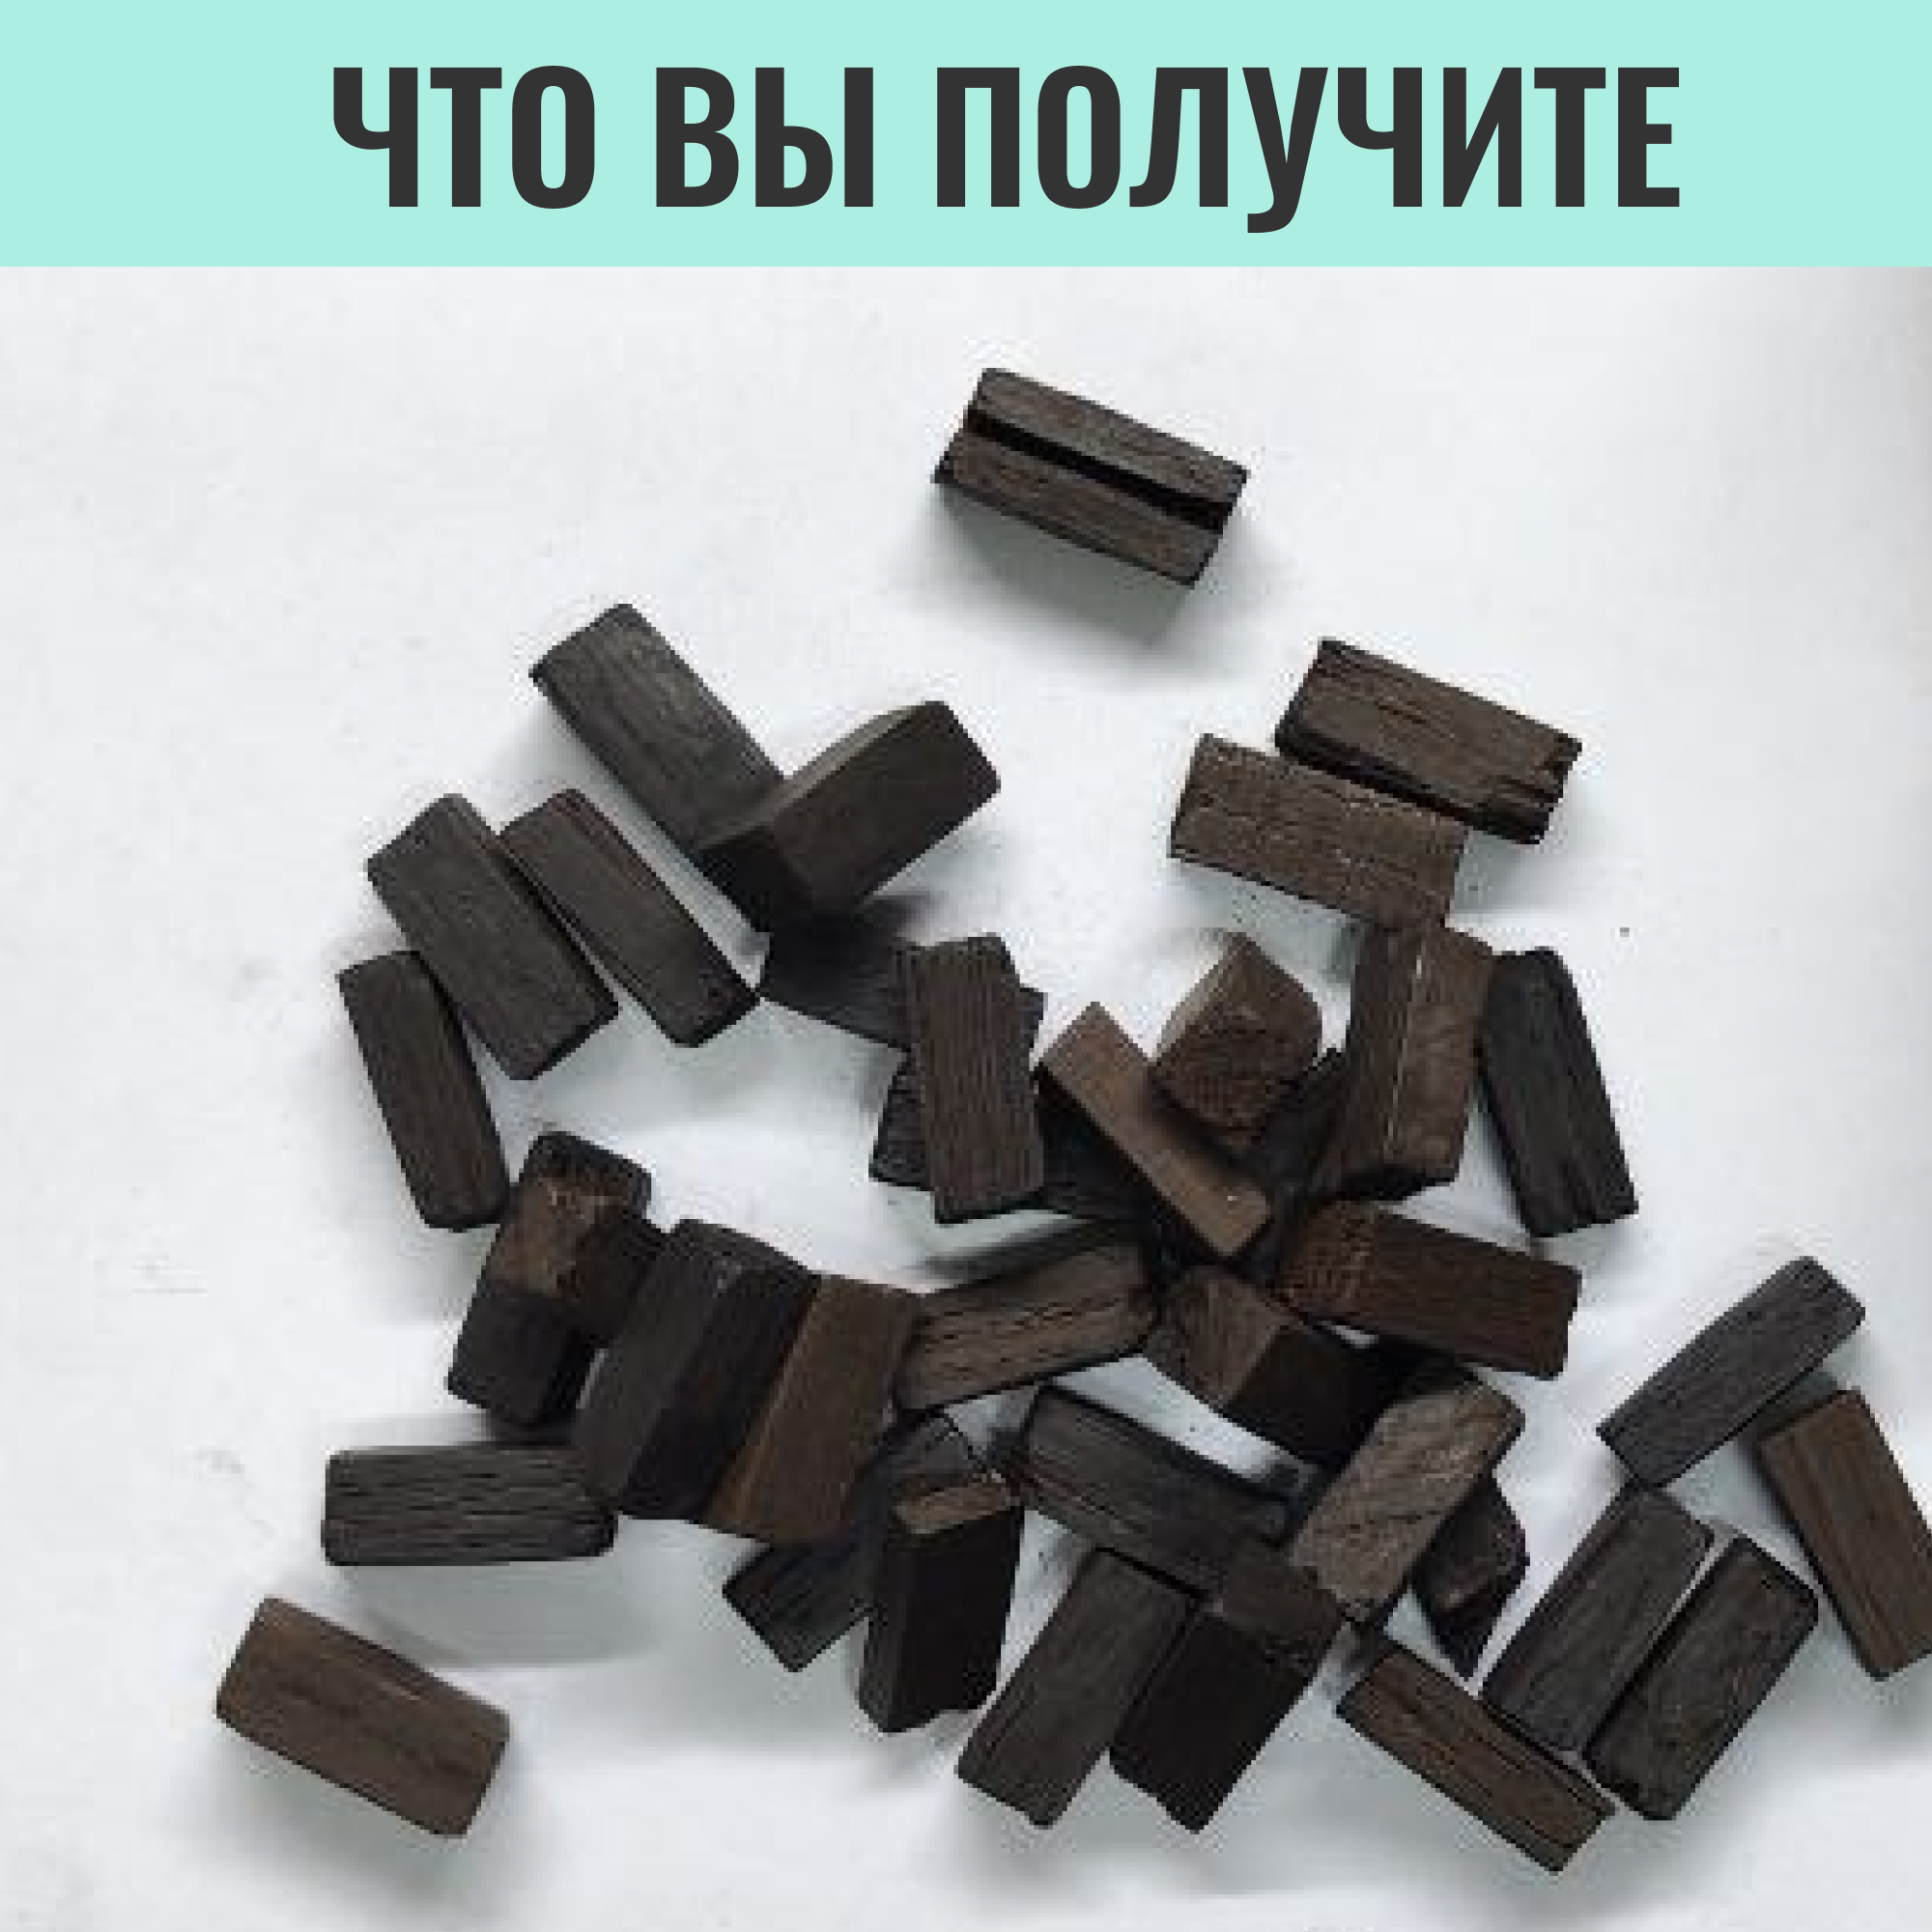 Кубики для настаивания самогона из Сербского дуба/ Сербские кубики Тёмный шоколад / щепа дубовая